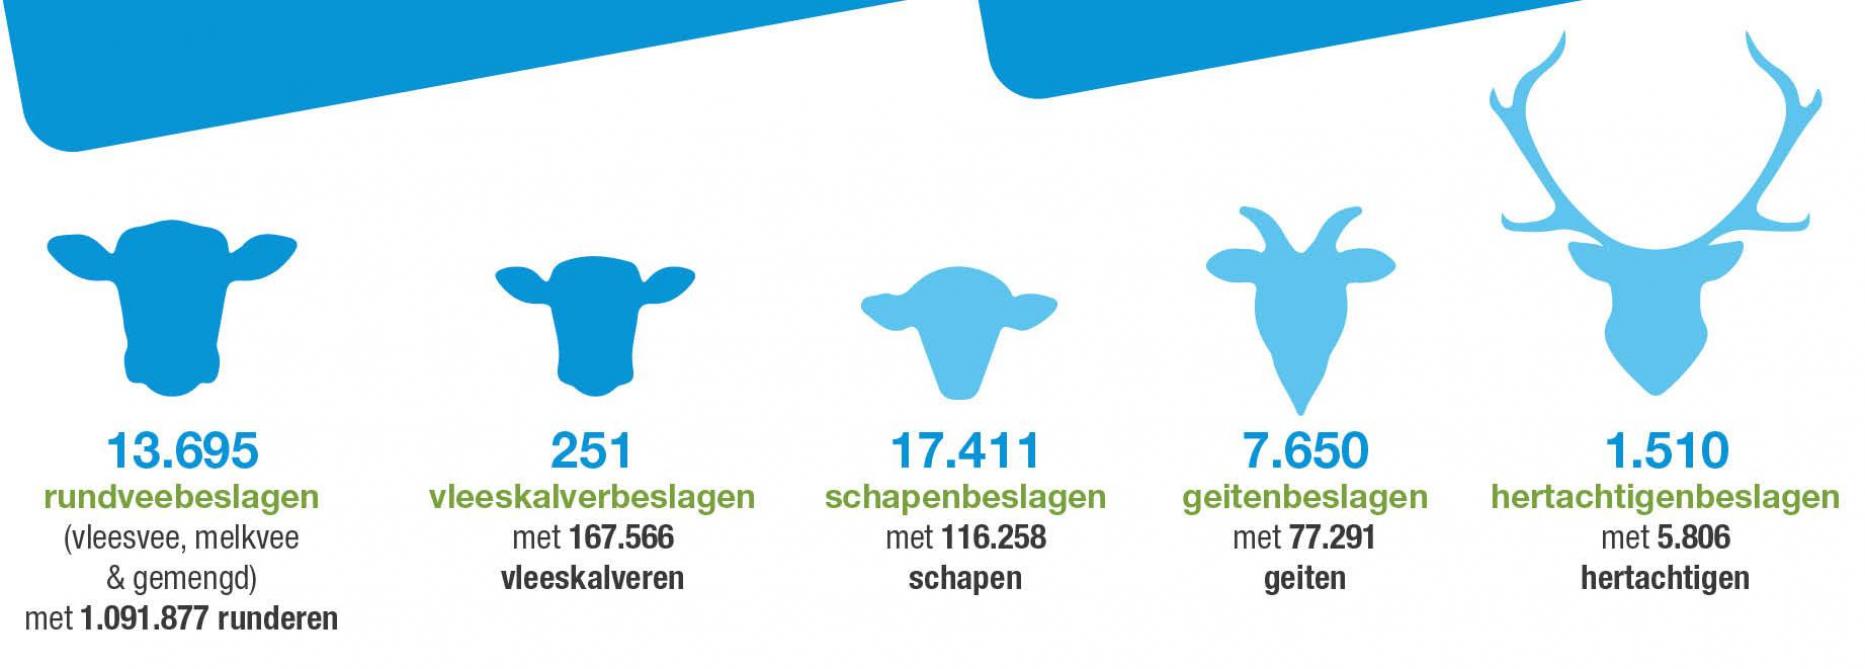 Het aantal veeteeltbedrijven in Vlaanderen in 2021 over verschillende veesoorten heen.